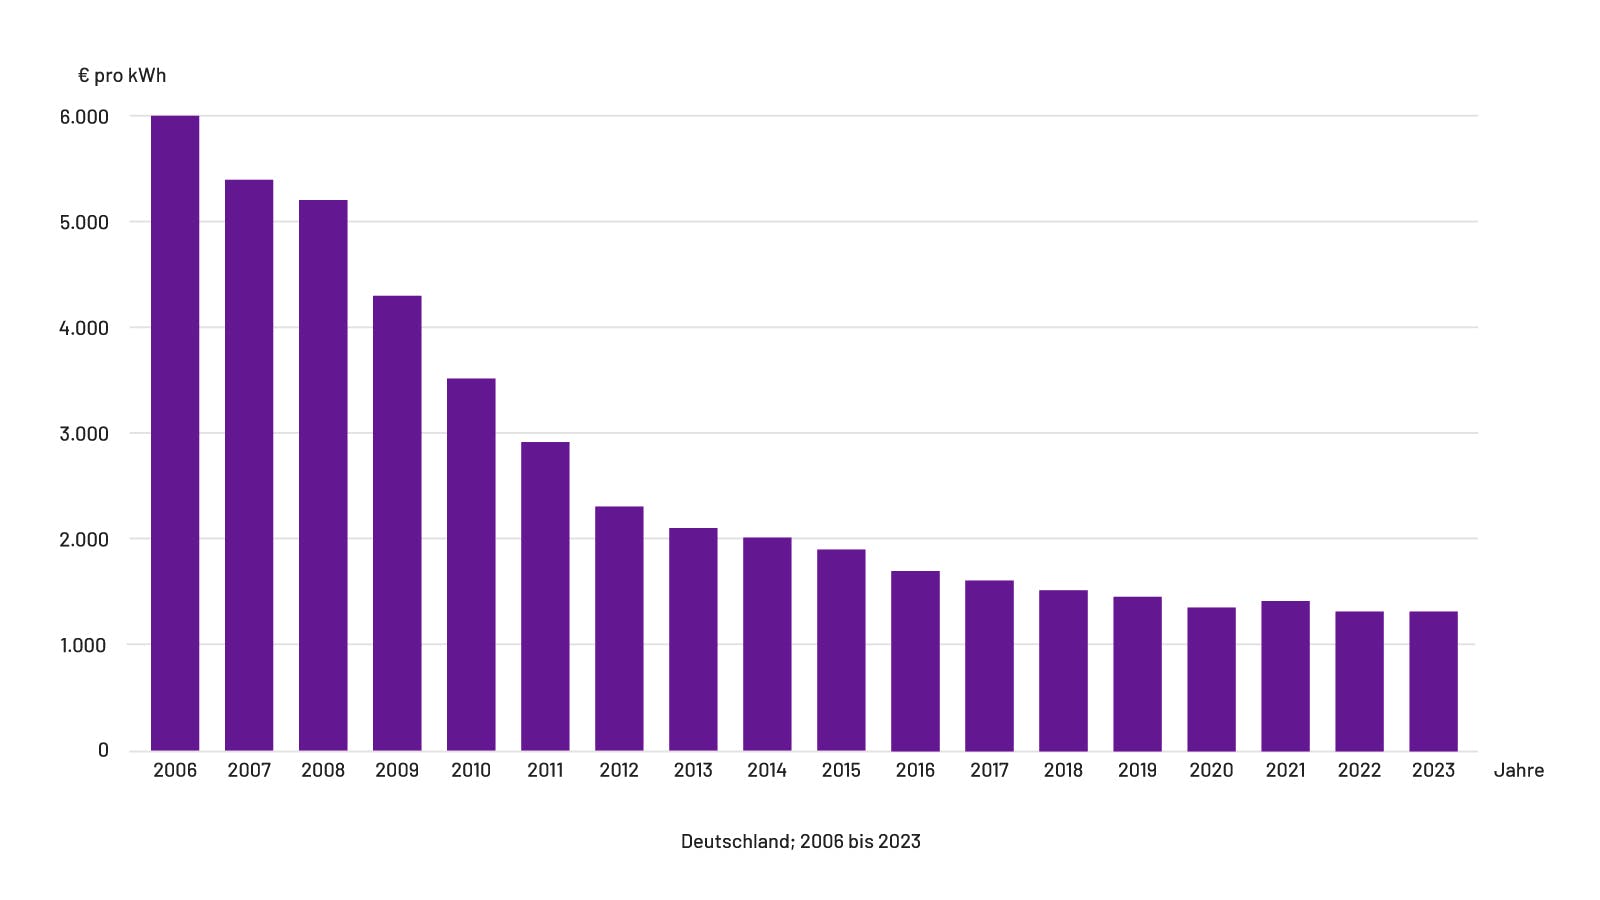 Preisentwicklung von PV-Anlagen seit 2006